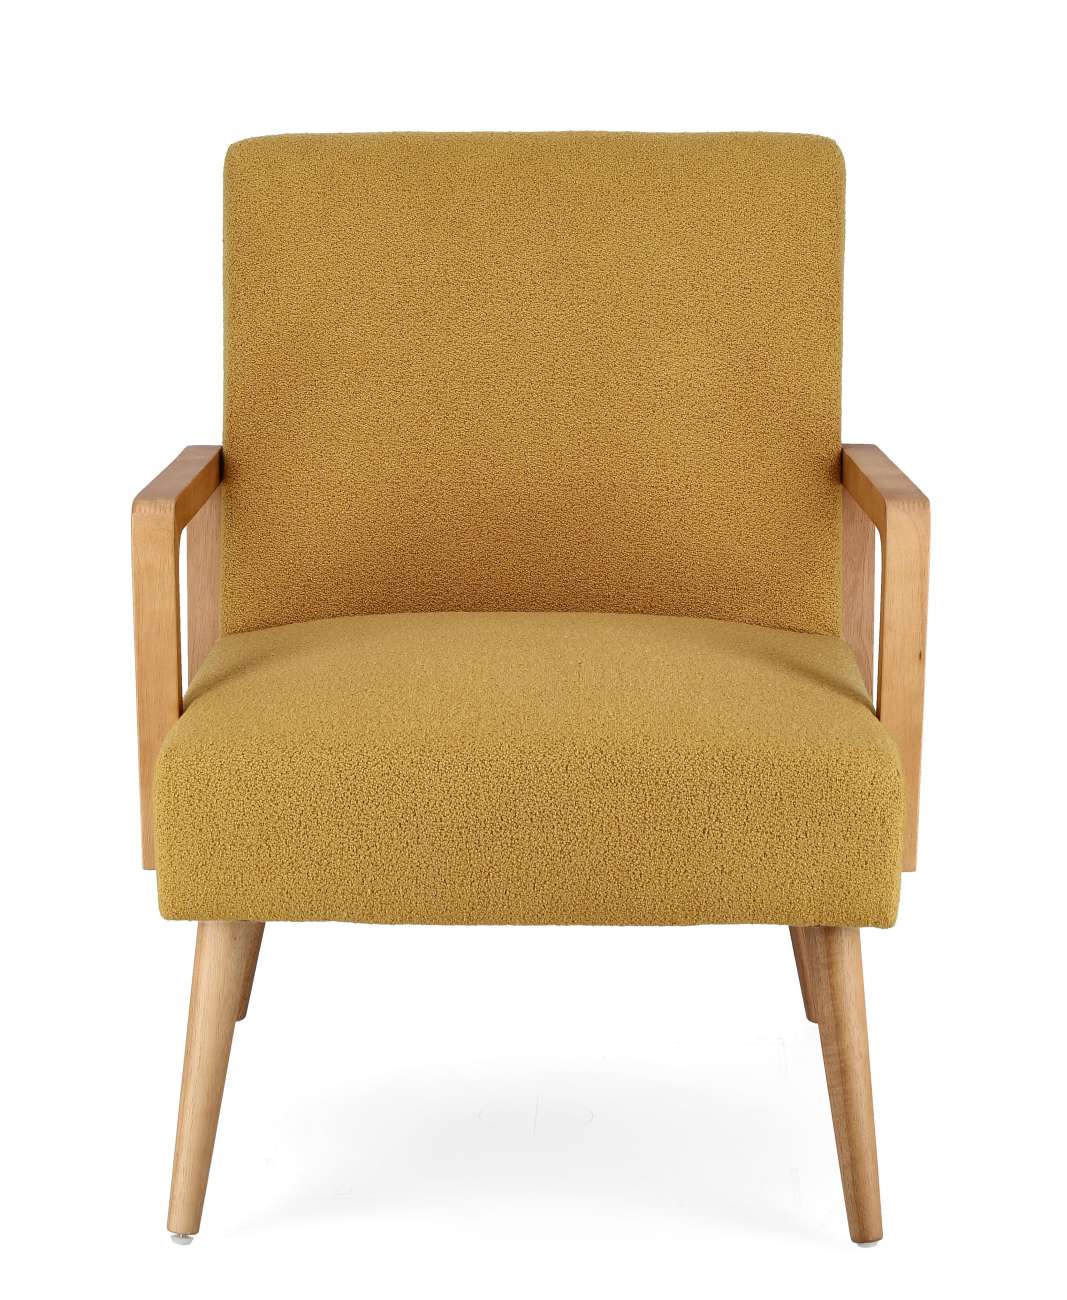 Der Sessel Verina überzeugt mit seinem modernen Stil. Gefertigt wurde er aus einem Stoff-Bezug, welcher einen Senf Farbton besitzt. Das Gestell ist aus Kautschukholz und hat eine natürliche Farbe. Der Sessel verfügt über eine Armlehne.